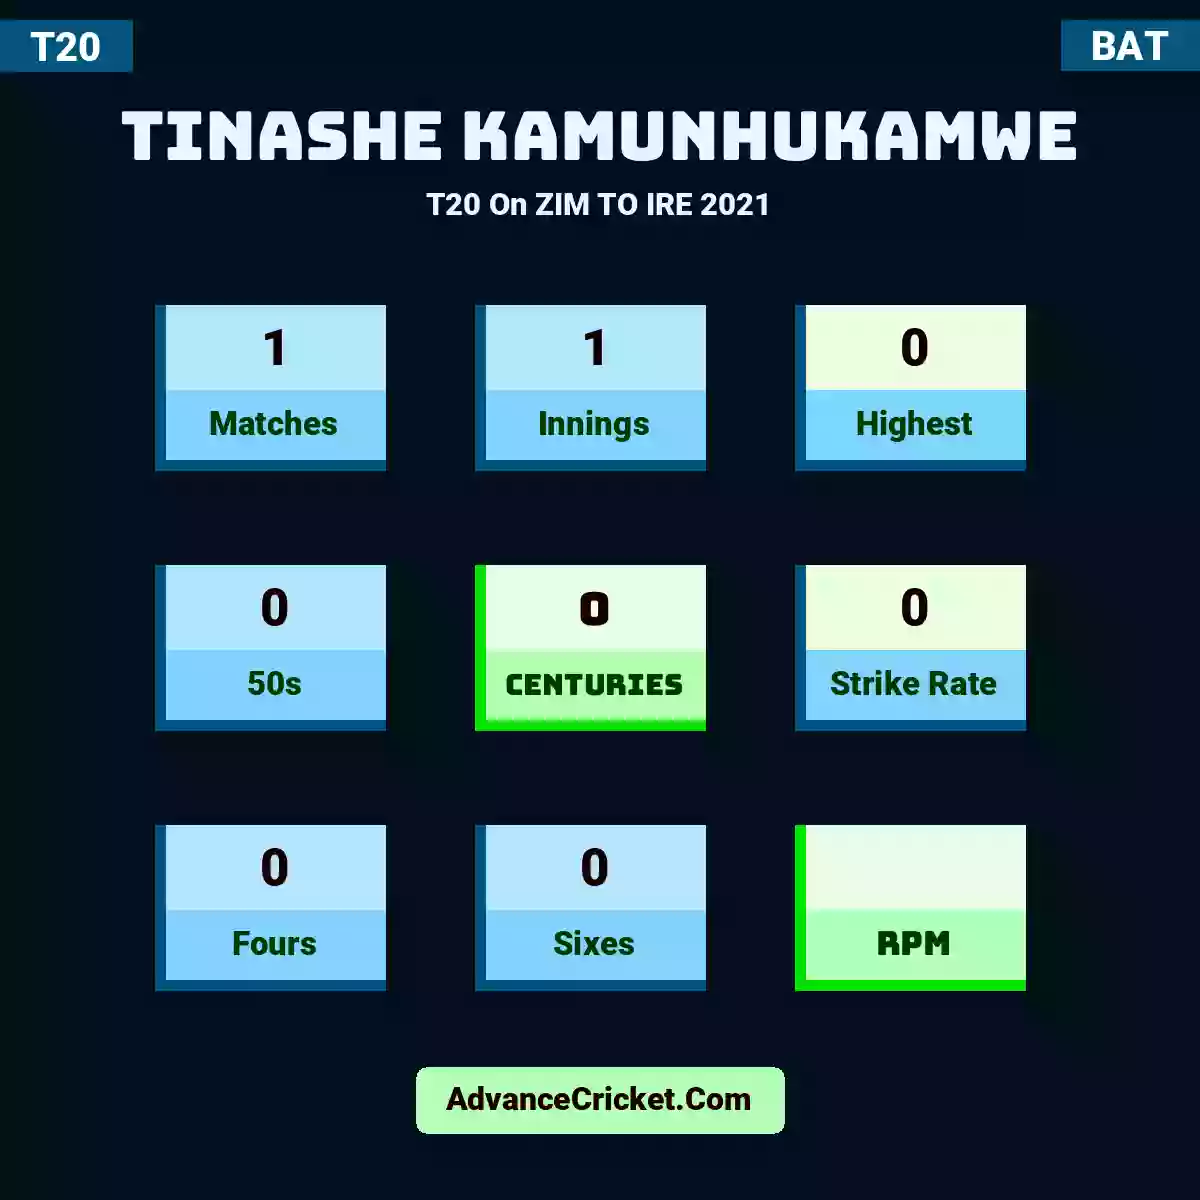 Tinashe Kamunhukamwe T20  On ZIM TO IRE 2021, Tinashe Kamunhukamwe played 1 matches, scored 0 runs as highest, 0 half-centuries, and 0 centuries, with a strike rate of 0. T.Kamunhukamwe hit 0 fours and 0 sixes.